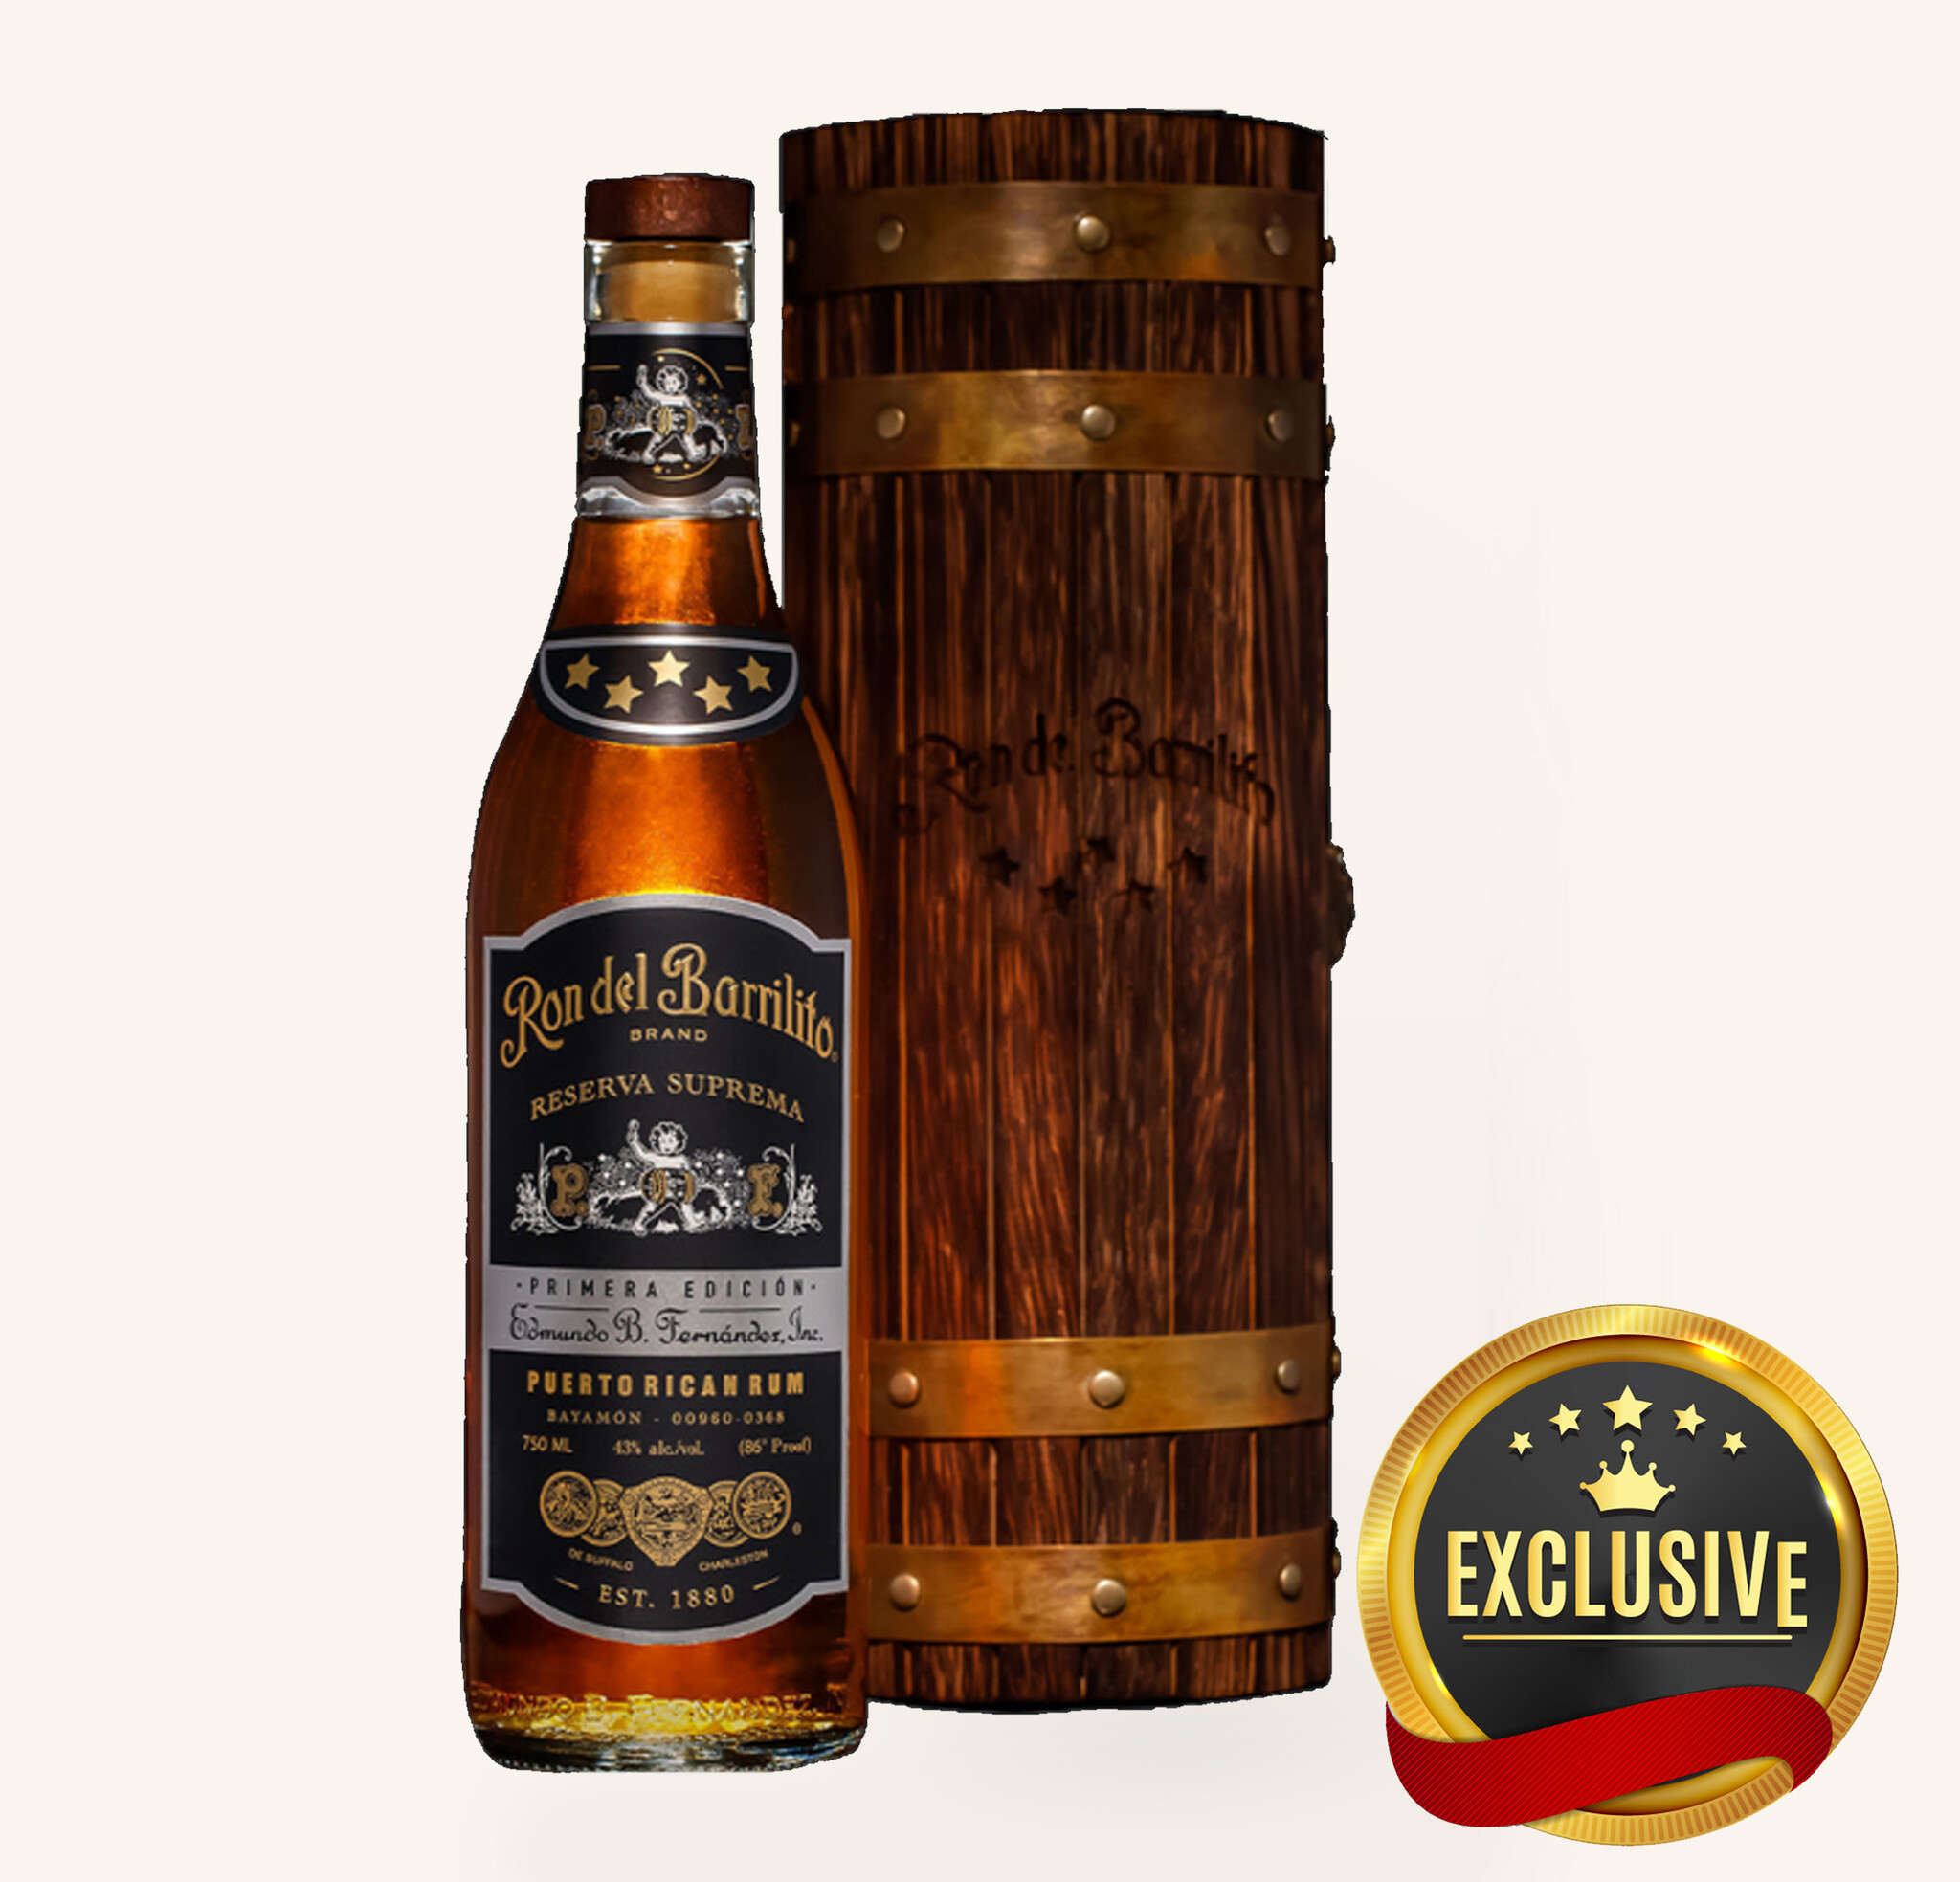 Reserva del Fossil 5 Wine&Spirits Primera $699 Star Suprema - Barrilito Aged Edicion Rum Uncle Ron